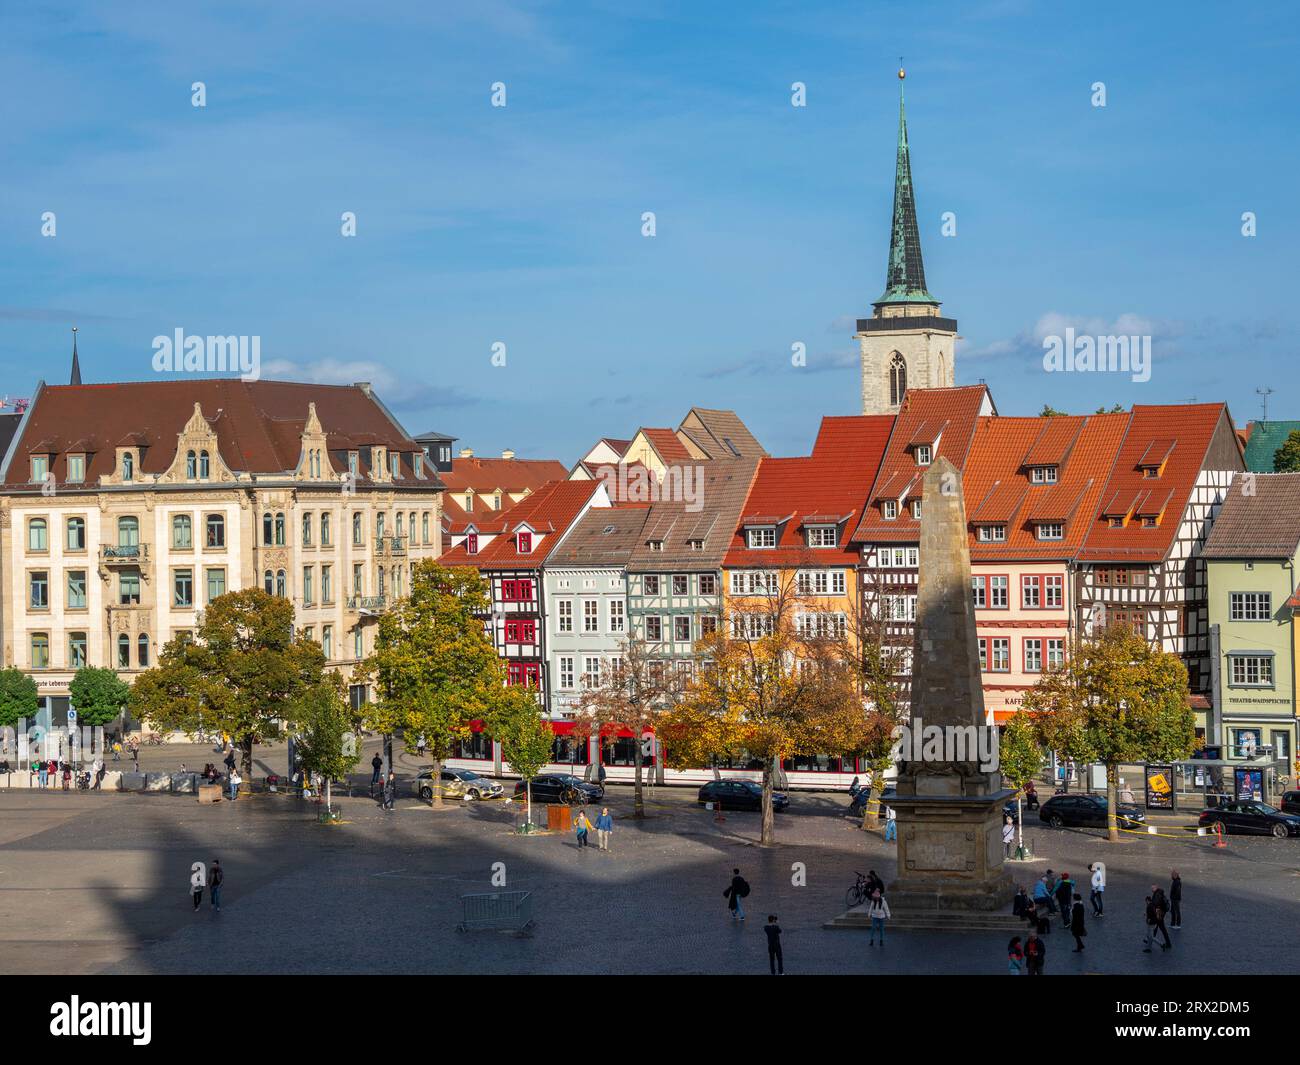 Vue de la ville d'Erfurt, la capitale et la plus grande ville de l'État de Thuringe en Allemagne centrale, Allemagne, Europe Banque D'Images